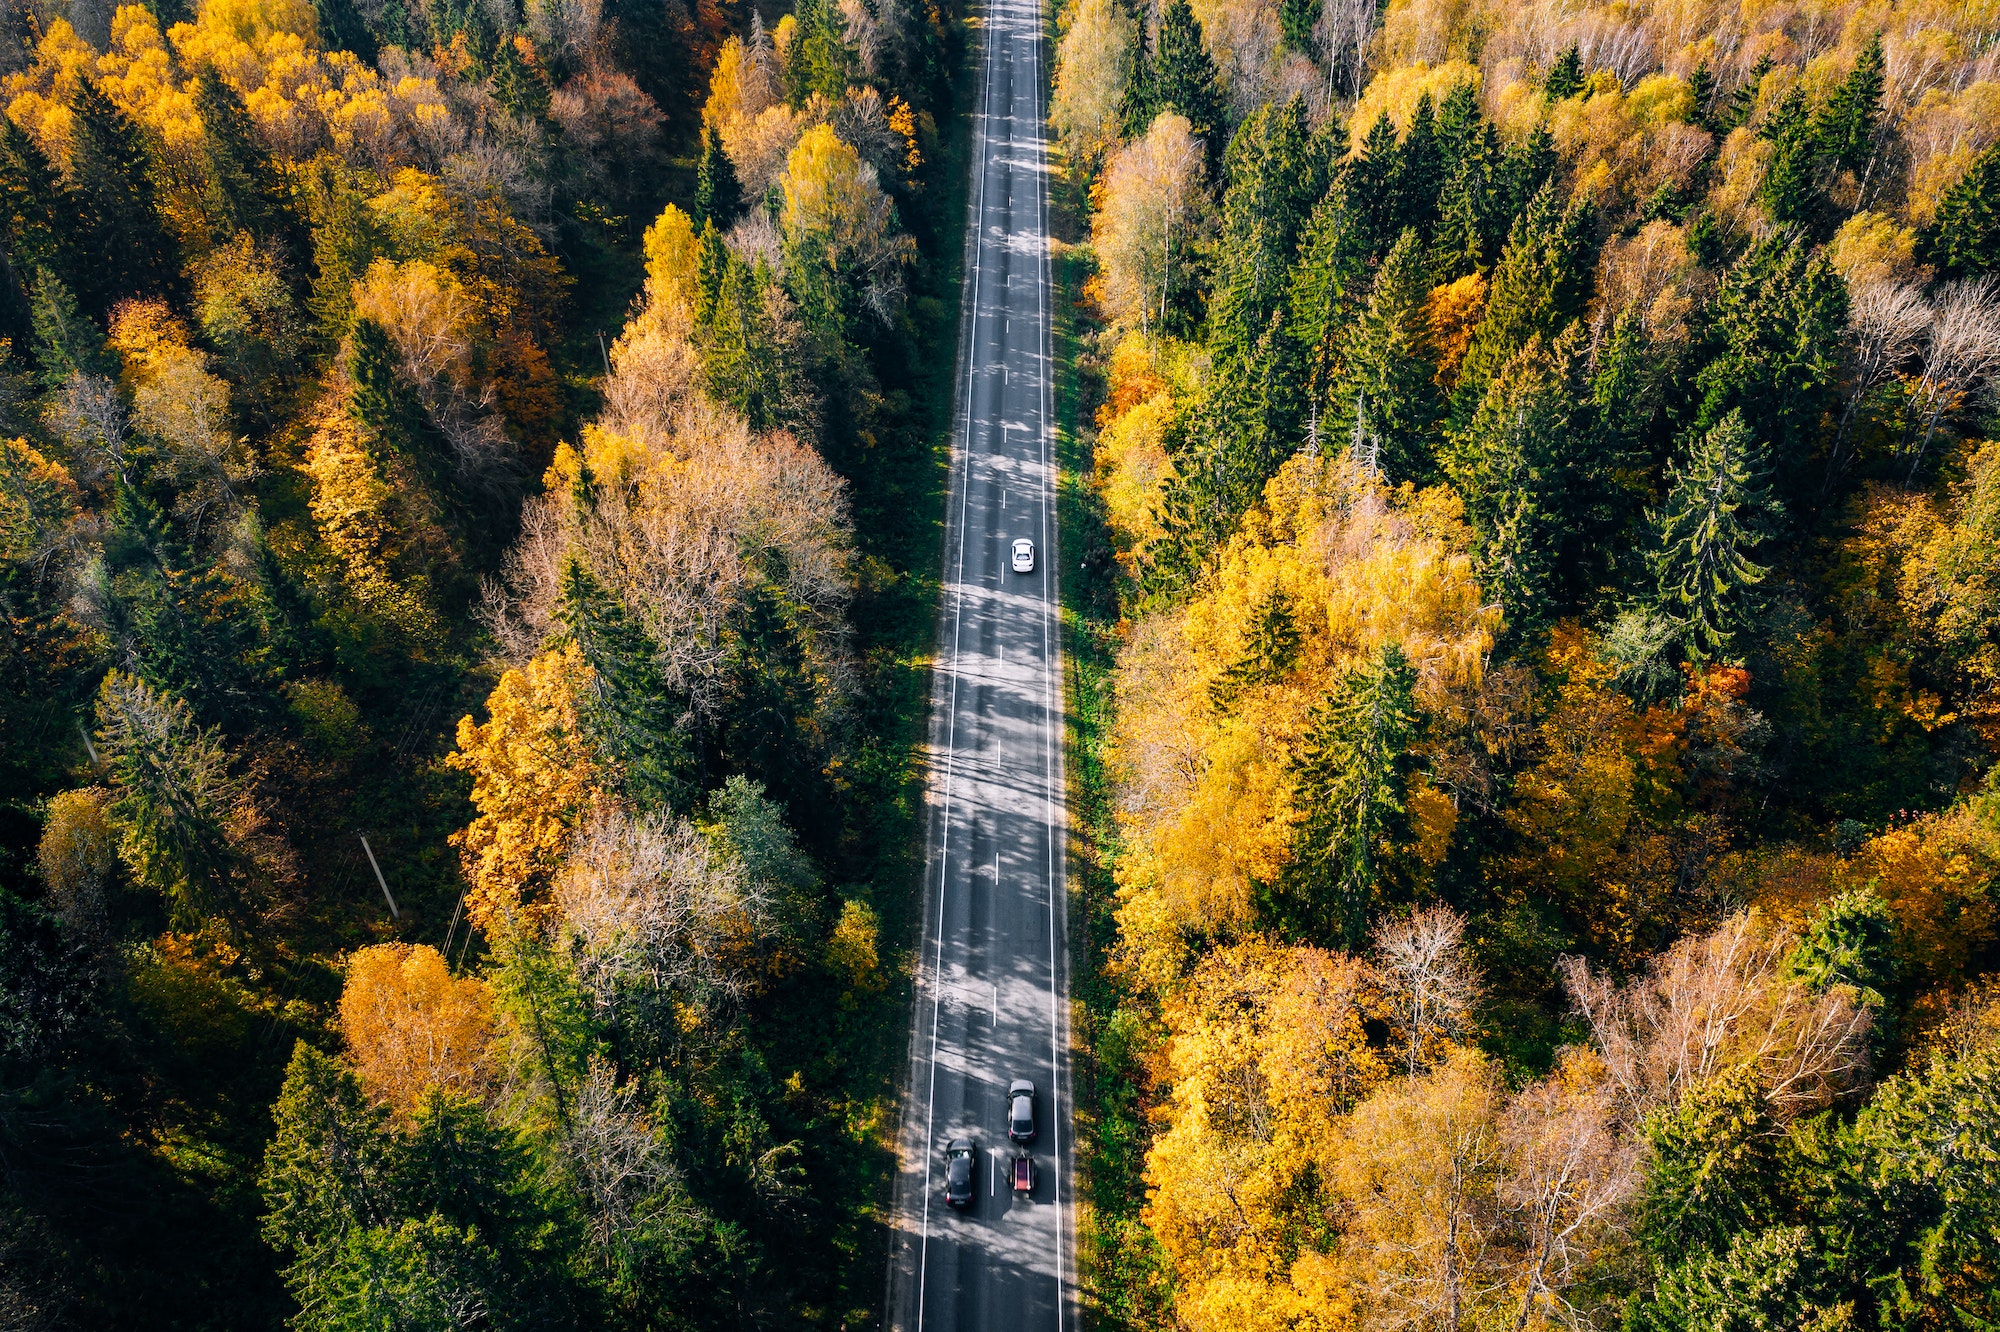 Vue aérienne d'une route dans une forêt d'automne aux feuilles rouges et orange.